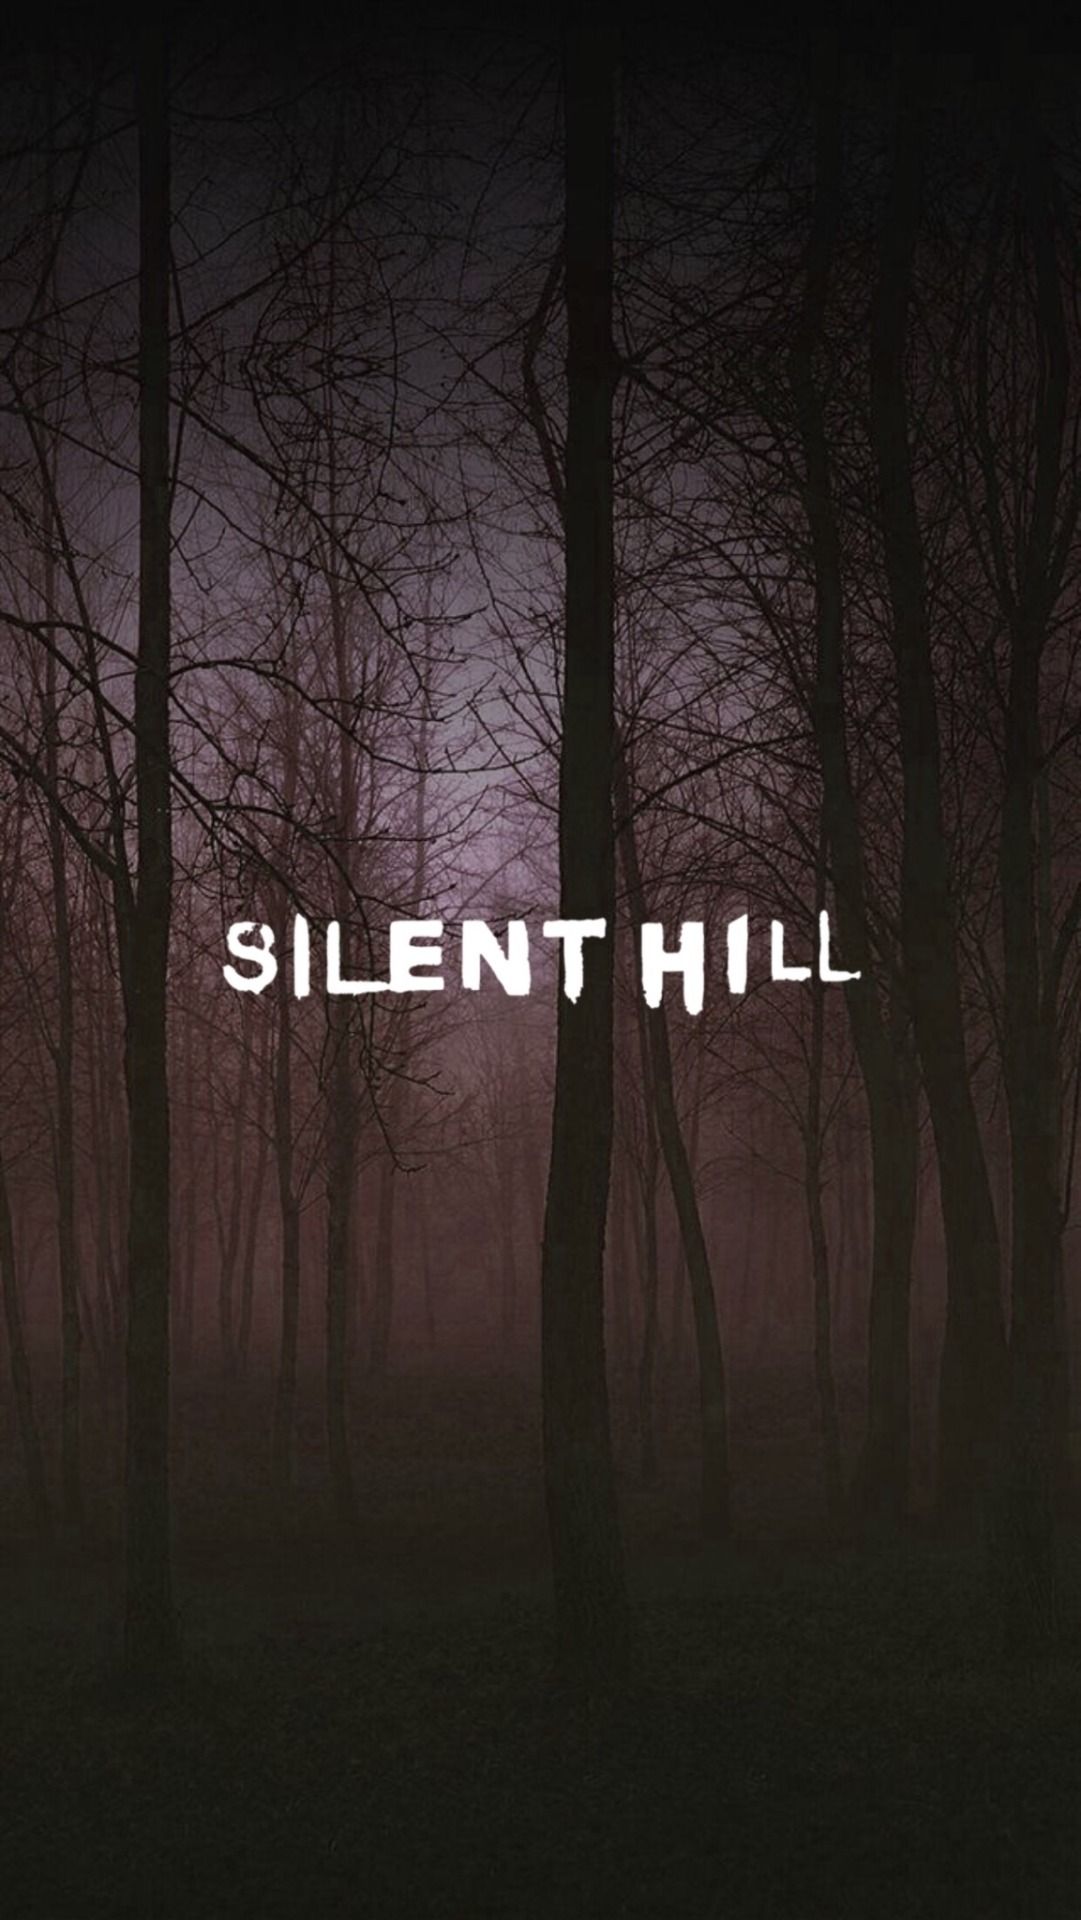 JinxAesthetics. Silent hill, Silent hill film, Silent hill art